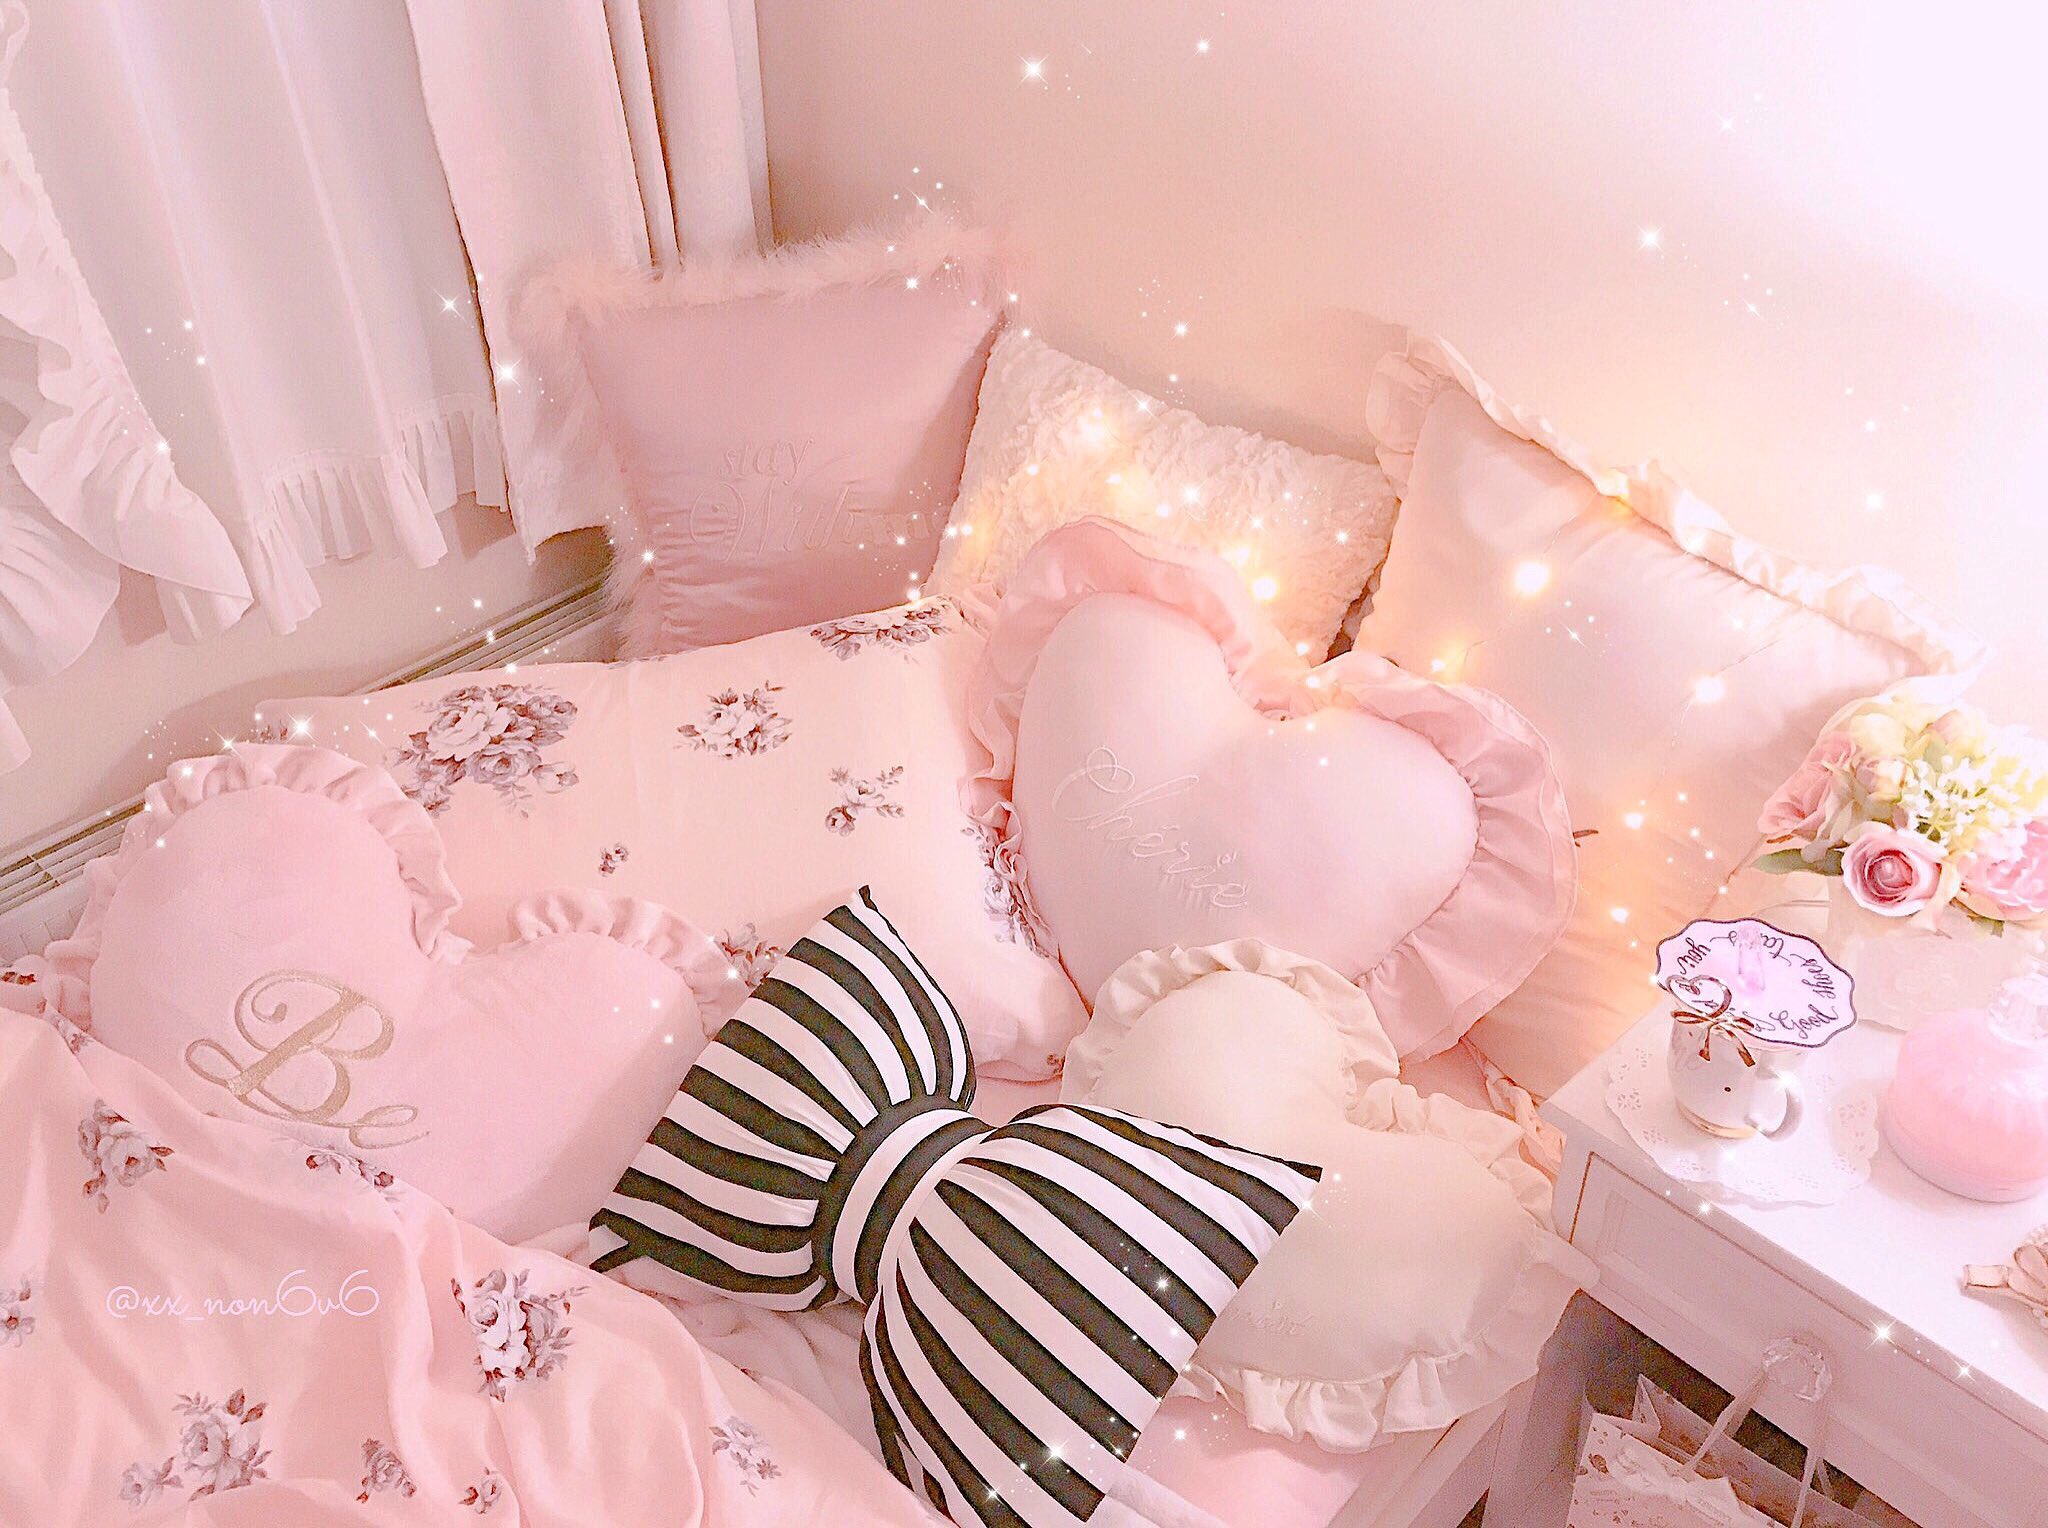 𝒩𝑜𝓃 ピンク色のお部屋でかわいいものに囲まれて何も考えずにゆっくり眠るの 至福 プリンセスみたいなベッド欲しい T Co Spr7ooaoj8 Twitter